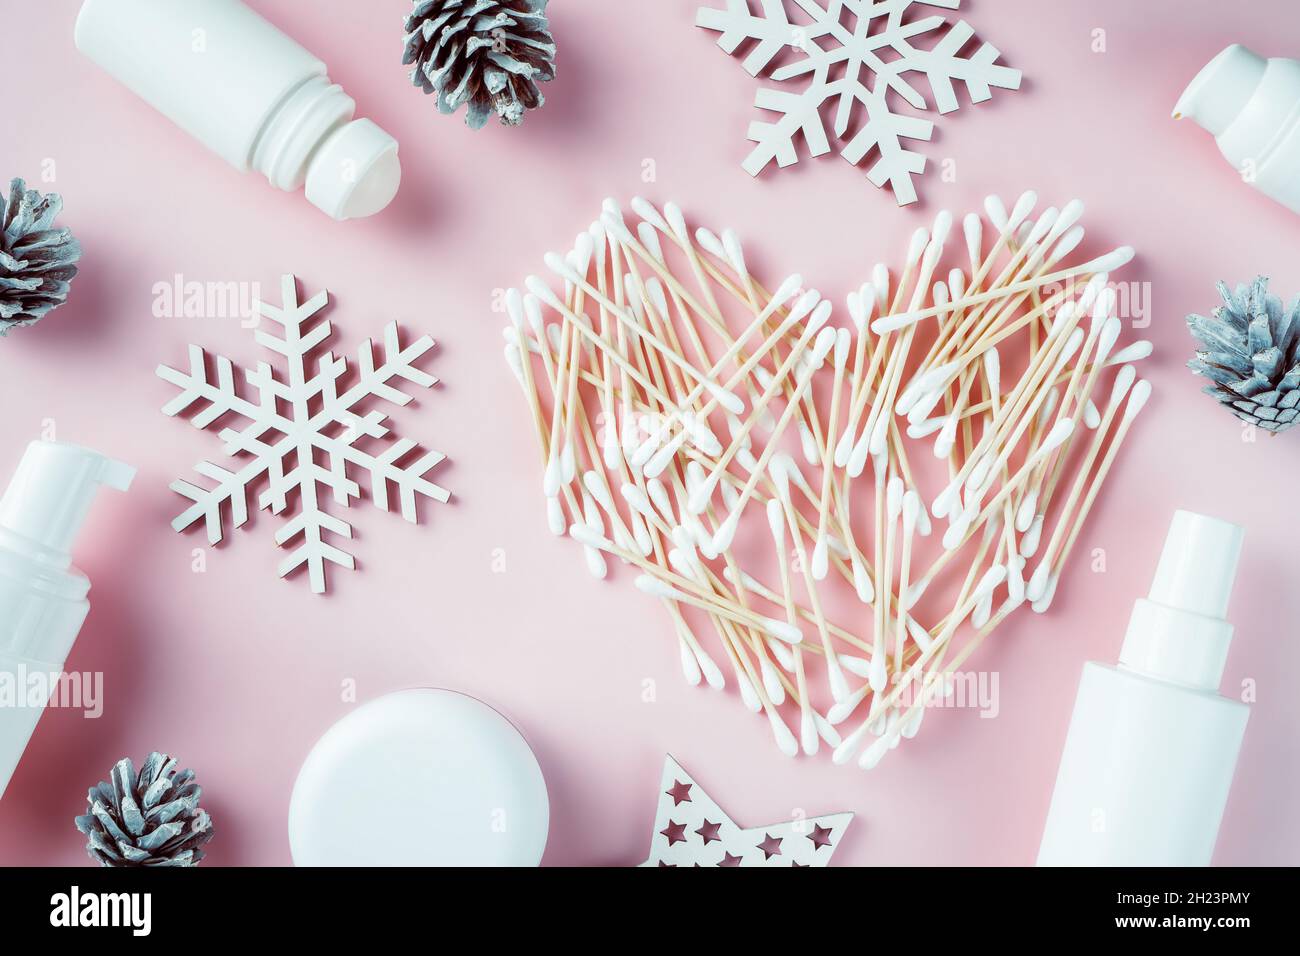 Herzförmige Wattestäbchen aus Holz mit Schneeflocken aus Holz,  Tannenzapfen, Kosmetikgläsern und Deodorant auf rosa Hintergrund. Flach  liegend Stockfotografie - Alamy